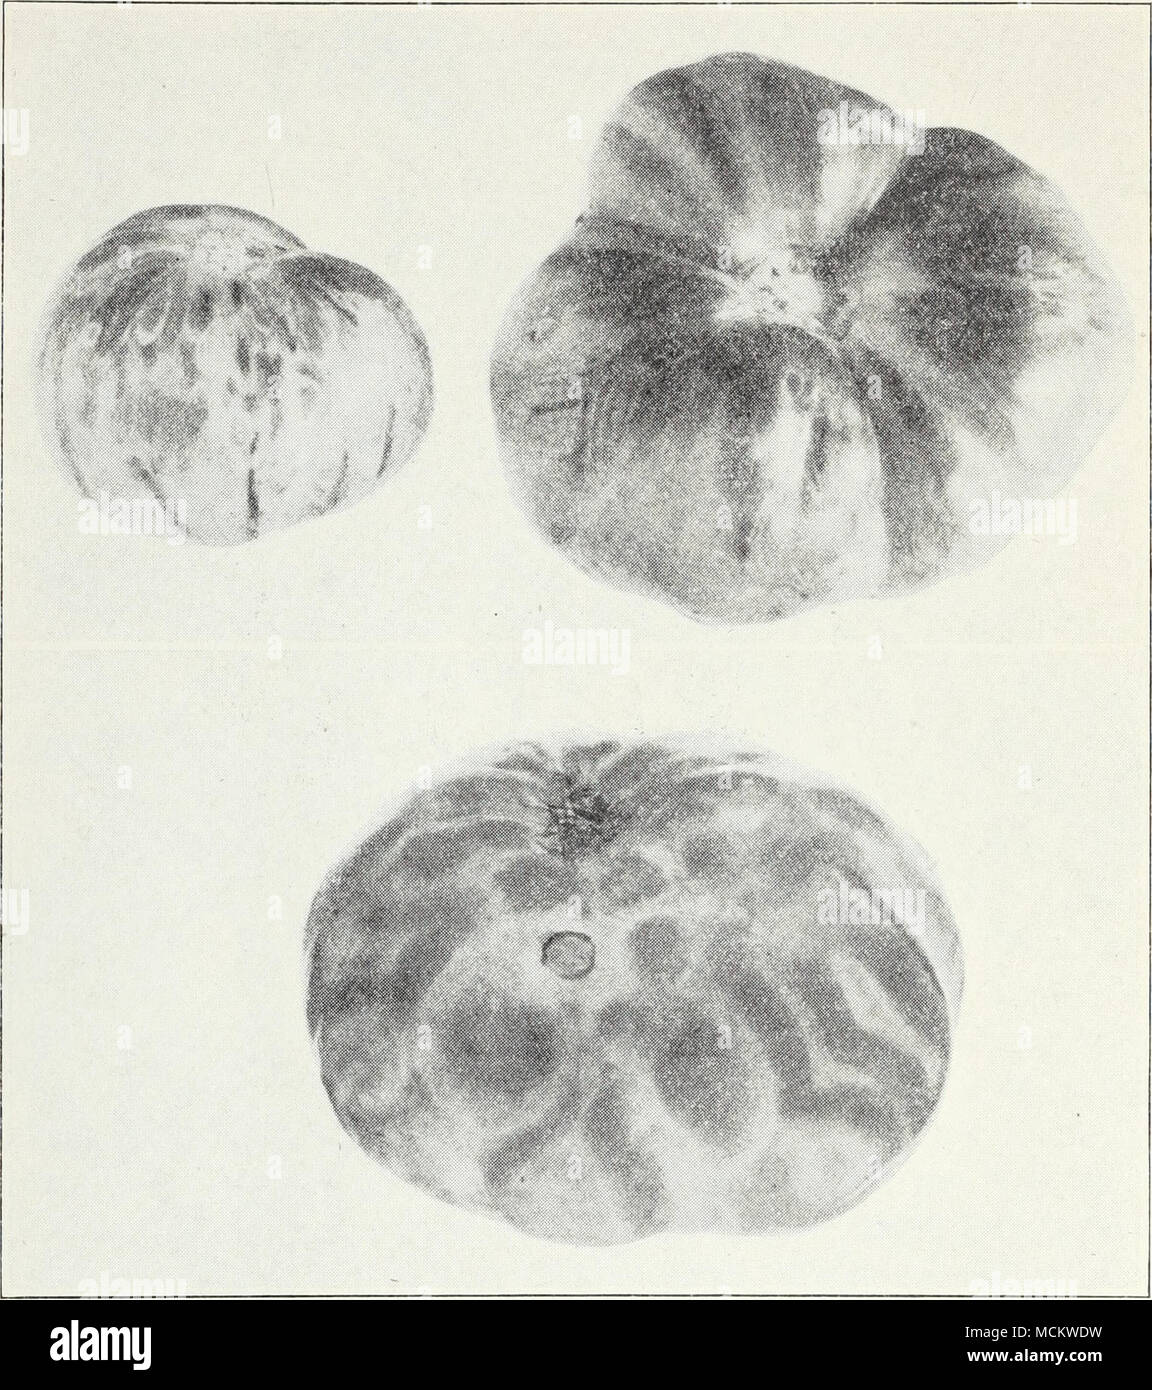 . Fig. 39.-spotted wilt de tomate. (À partir de la poste Cir. 104.) orteils par le retard et l'assassinat de plantes et d'une réduction de la taille, de la qualité et production de tomates. Marché, voyage, et conserver les variétés sont suscepti- ble. Beaucoup d'autres hôtes sont attaqués par le même champignon Verticillium, alho-atrum, qui cause d'abricots, coeur noir tige bleu de raspber- ries, et d'importantes maladies des fraise, pomme de terre, et le coton. Le chef de l'espoir de combattre cette maladie dans les tomates est de variétés résistantes. Le problème est compliqué par le fait qu'une autre grave Banque D'Images